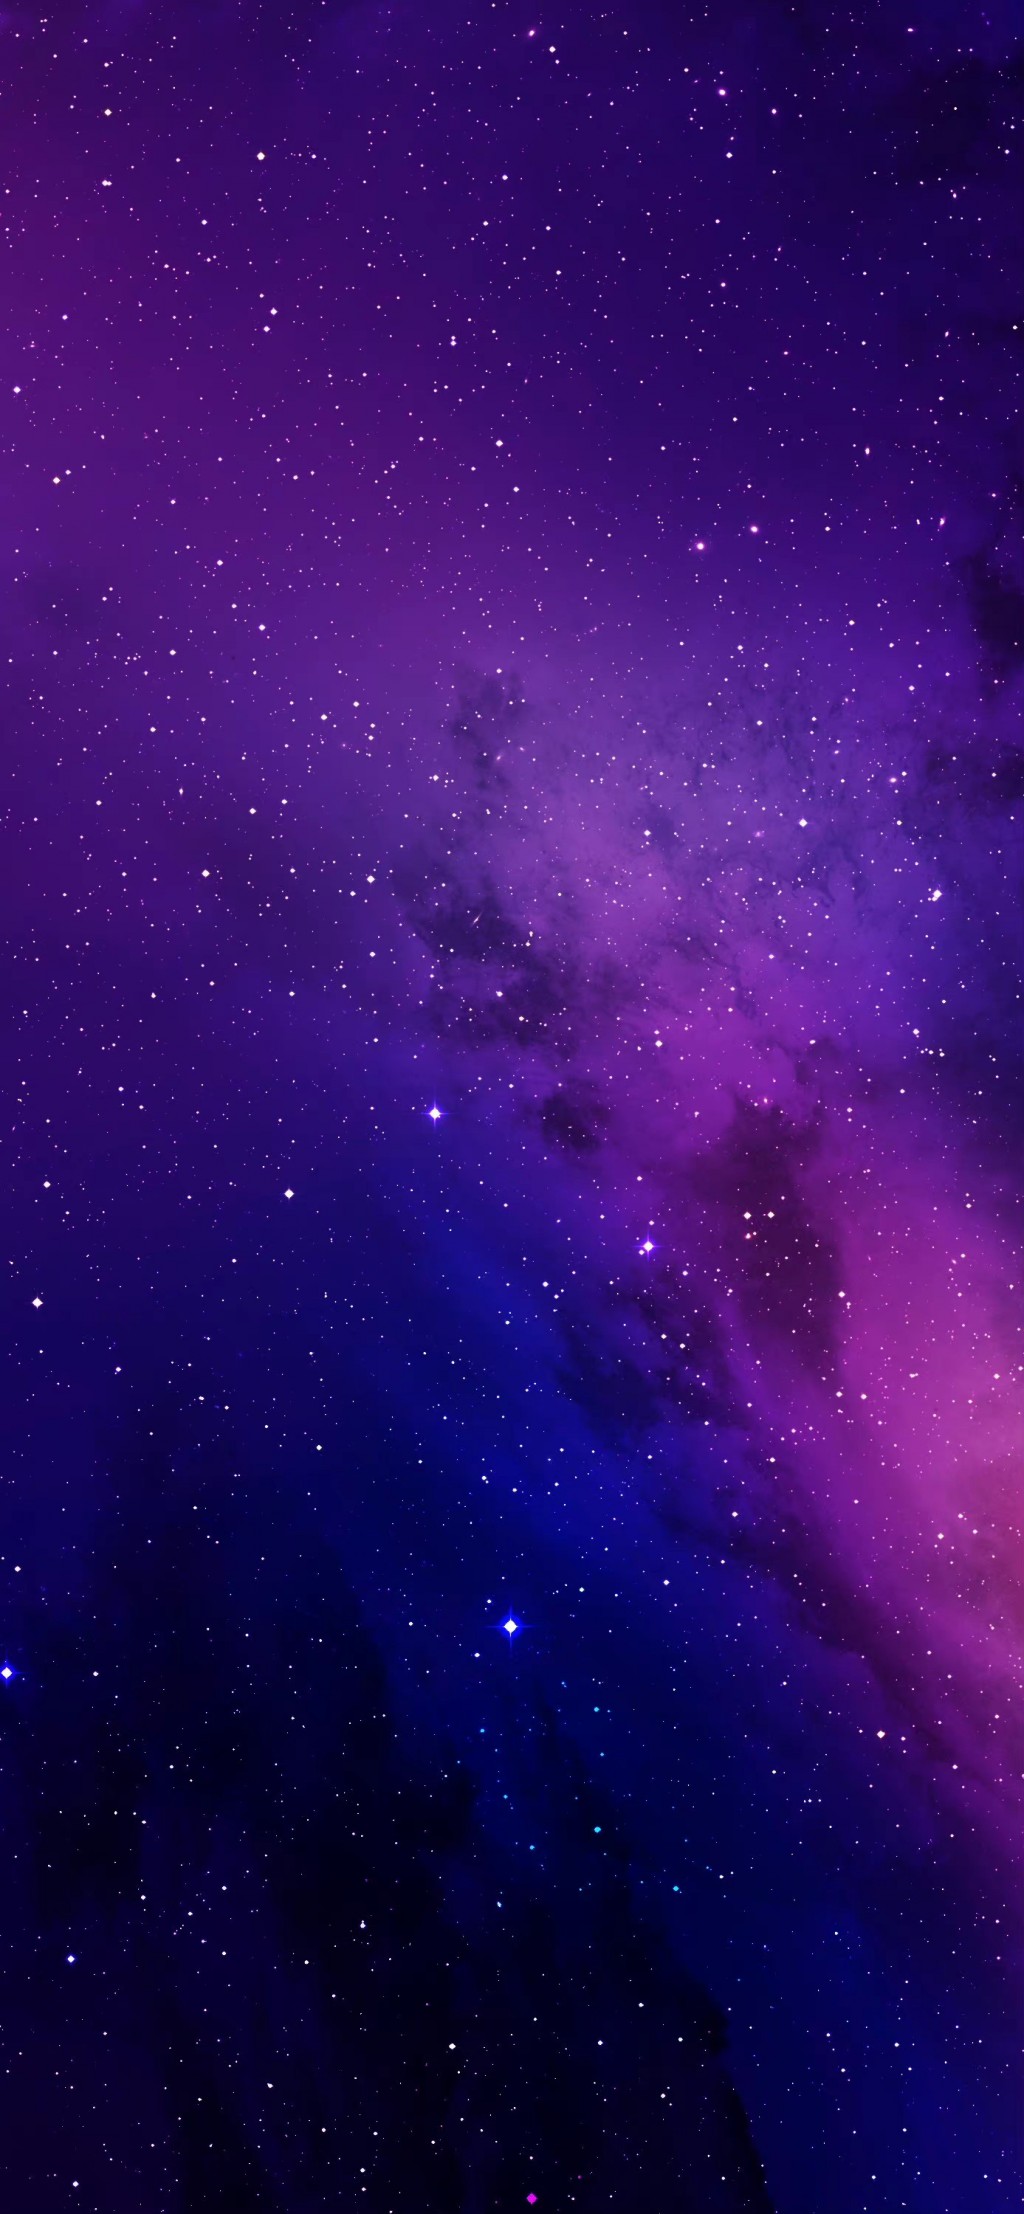 暗紫色系列风景手机壁纸